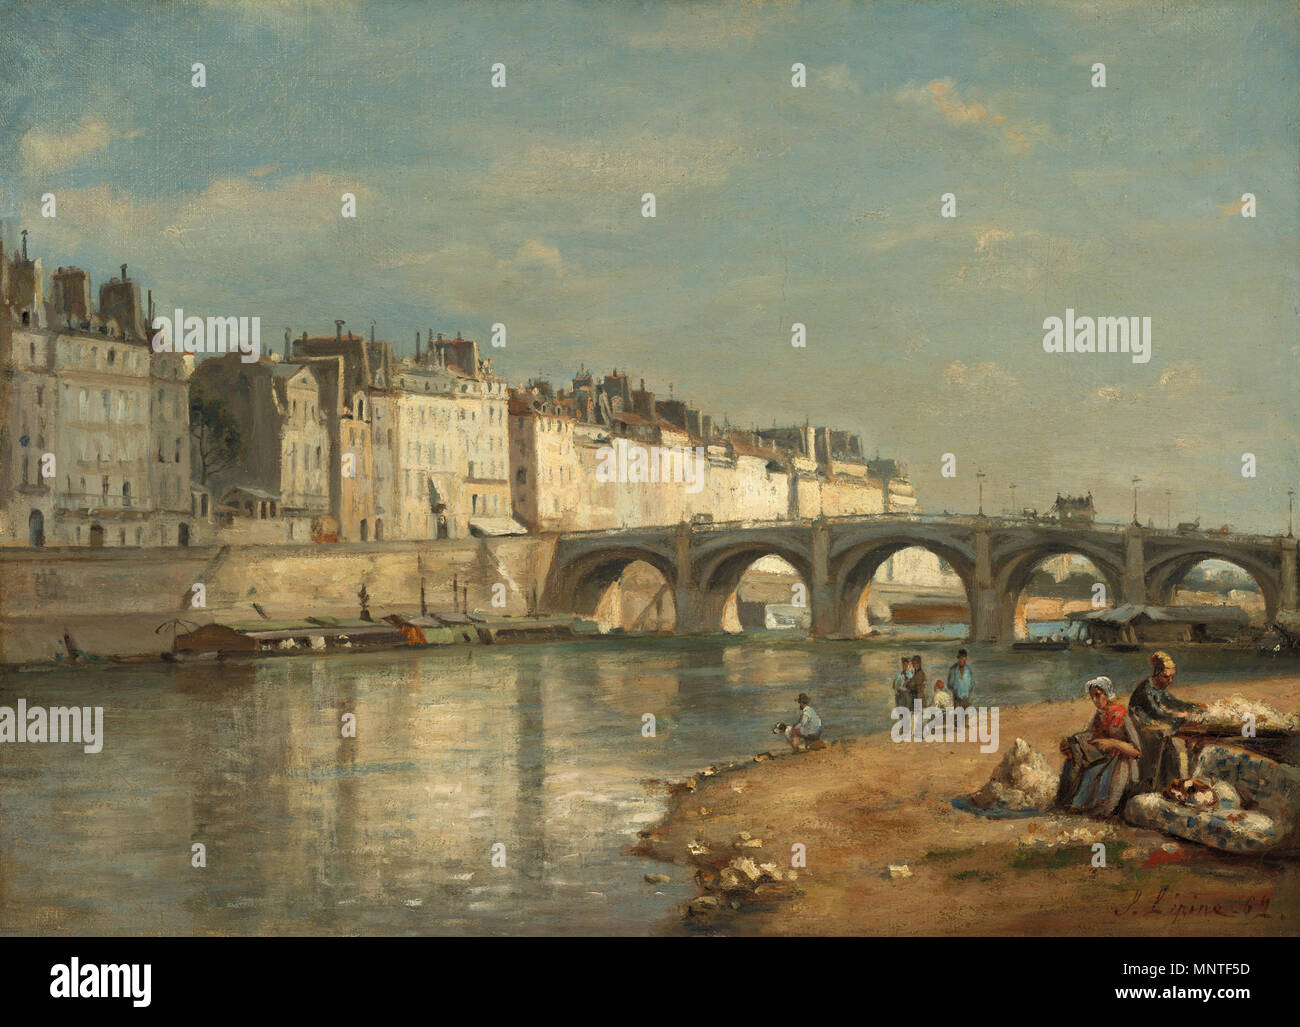 Painting; oil on canvas; overall: 40.2 x 55.1 cm (15 13/16 x 21 11/16 in.) framed: 57.8 x 73 x 6.9 cm (22 3/4 x 28 3/4 x 2 11/16 in.);   Pont de la Tournelle, Paris   1862.   1013 Pont de la Tournelle, Paris-1862-Stanislas Lepine Stock Photo